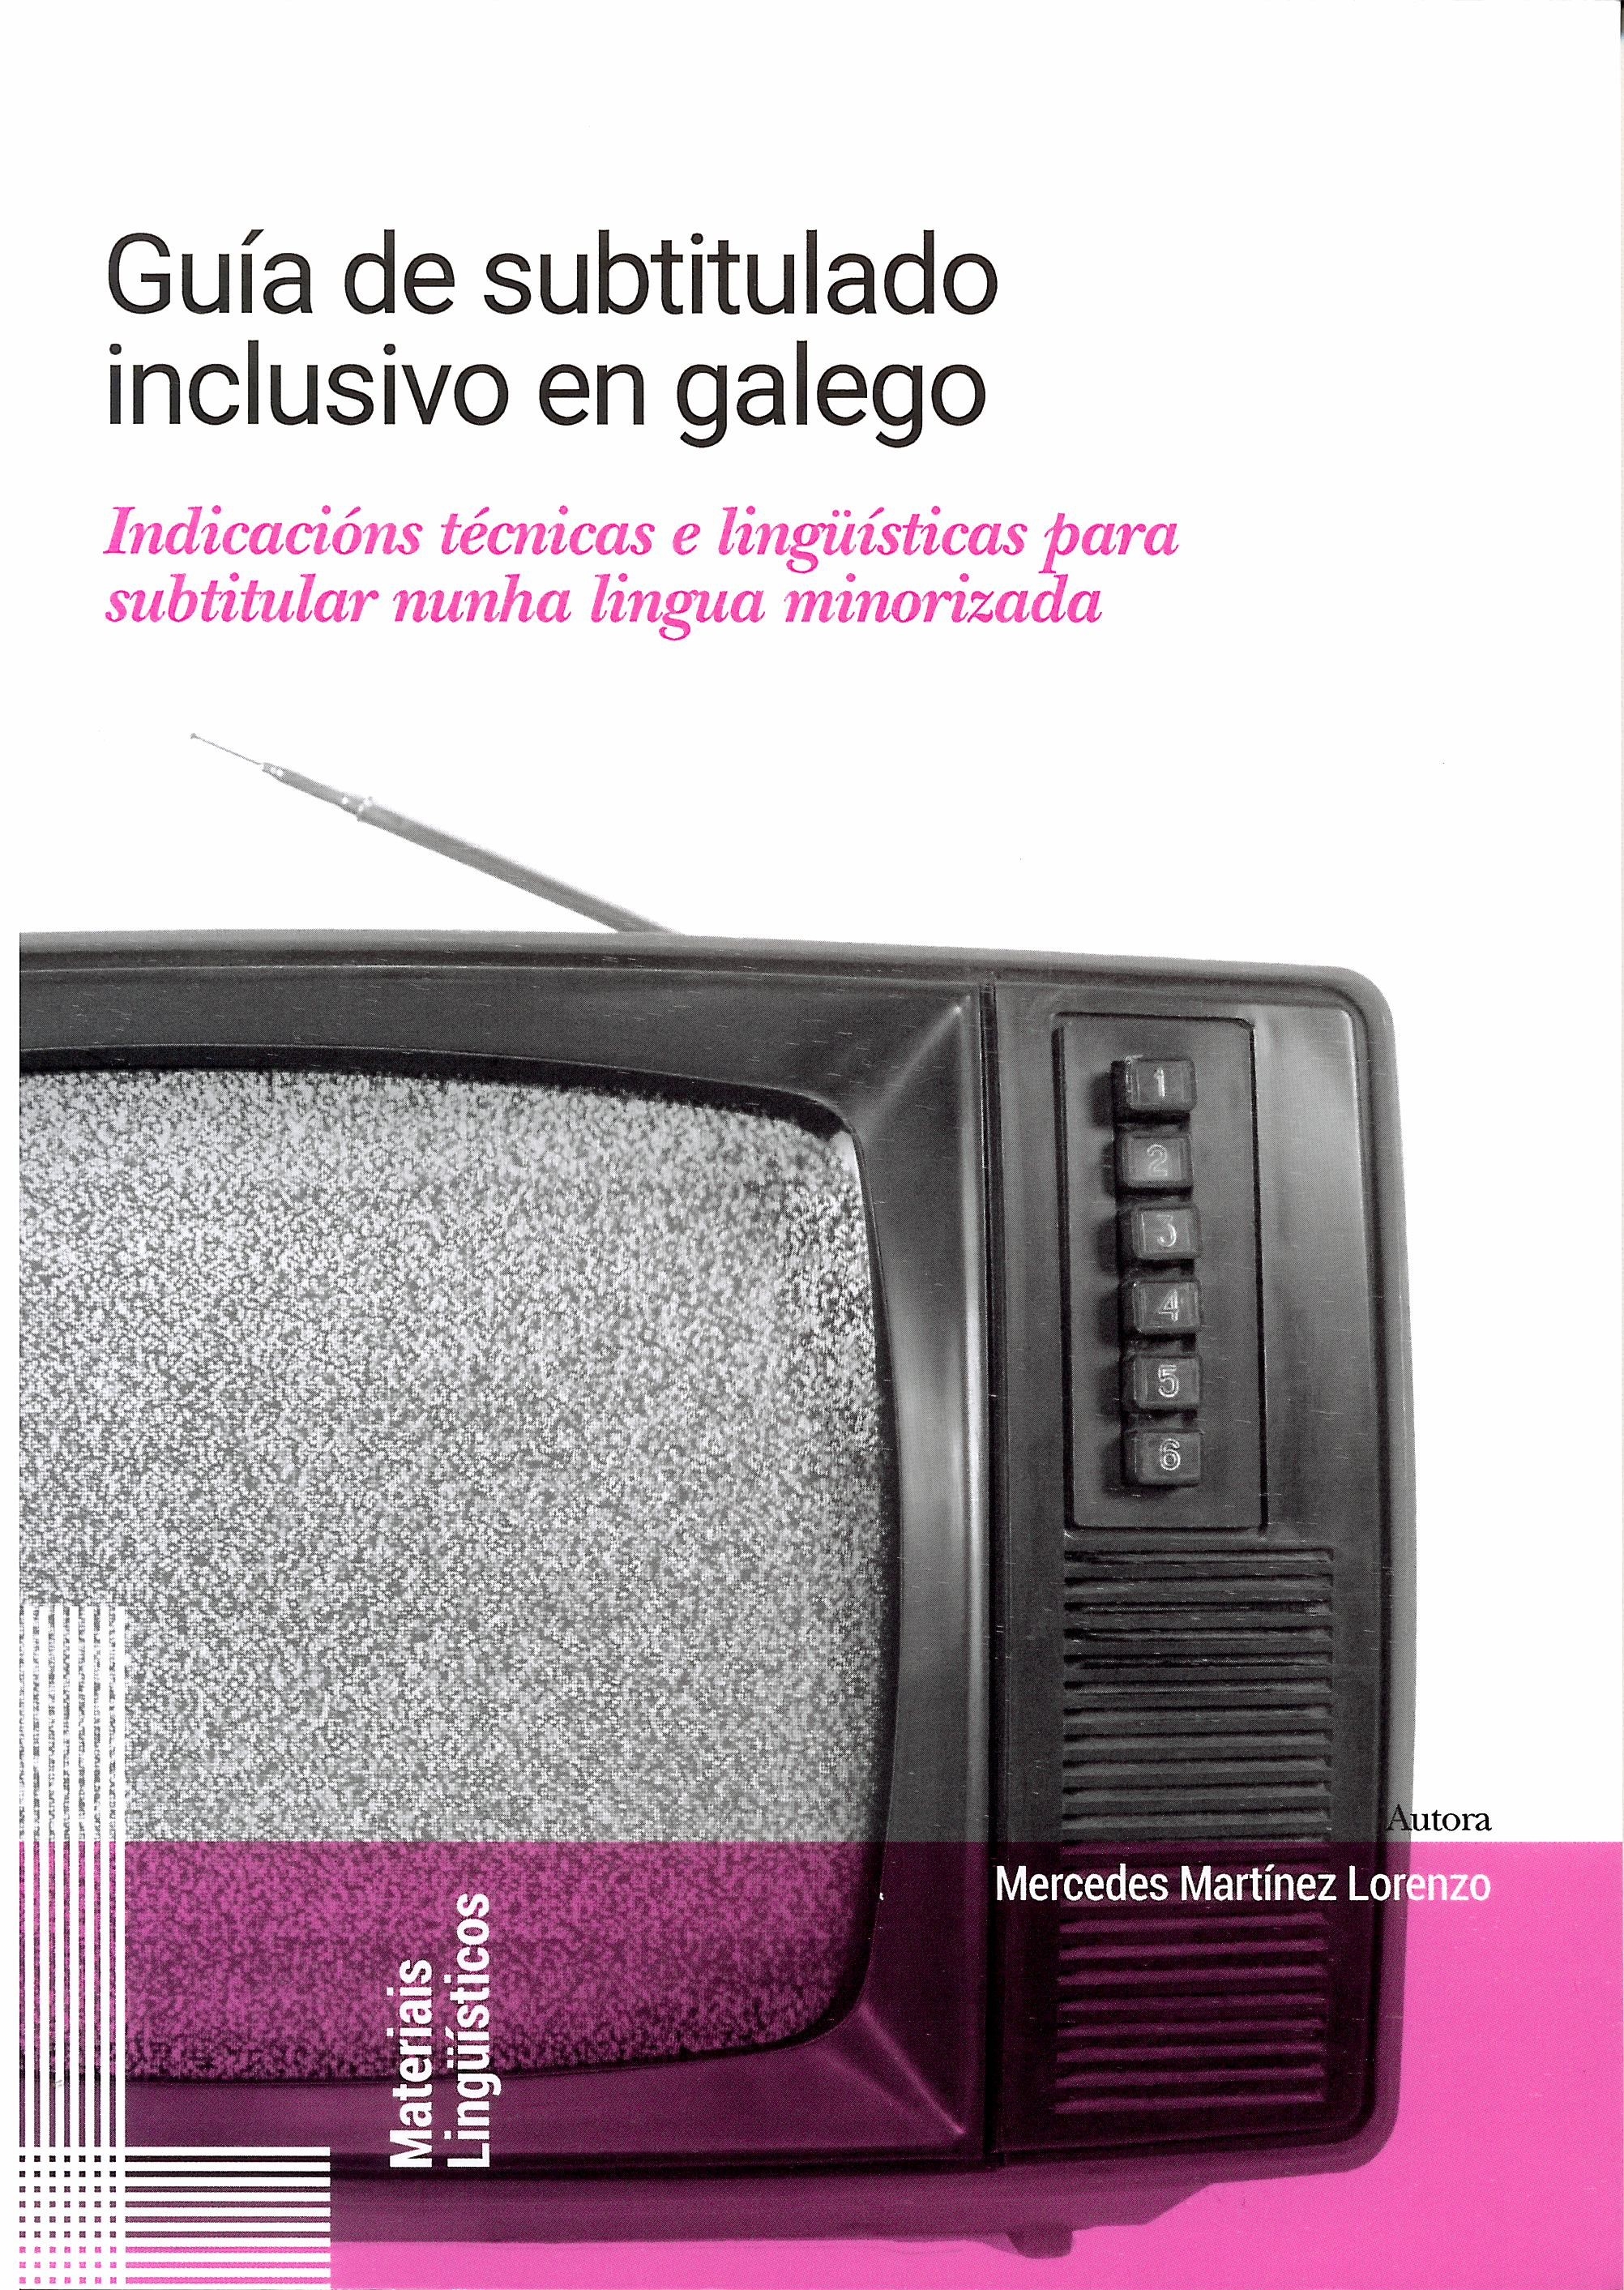 Imagen de portada del libro Guía de subtitulado inclusivo en galego